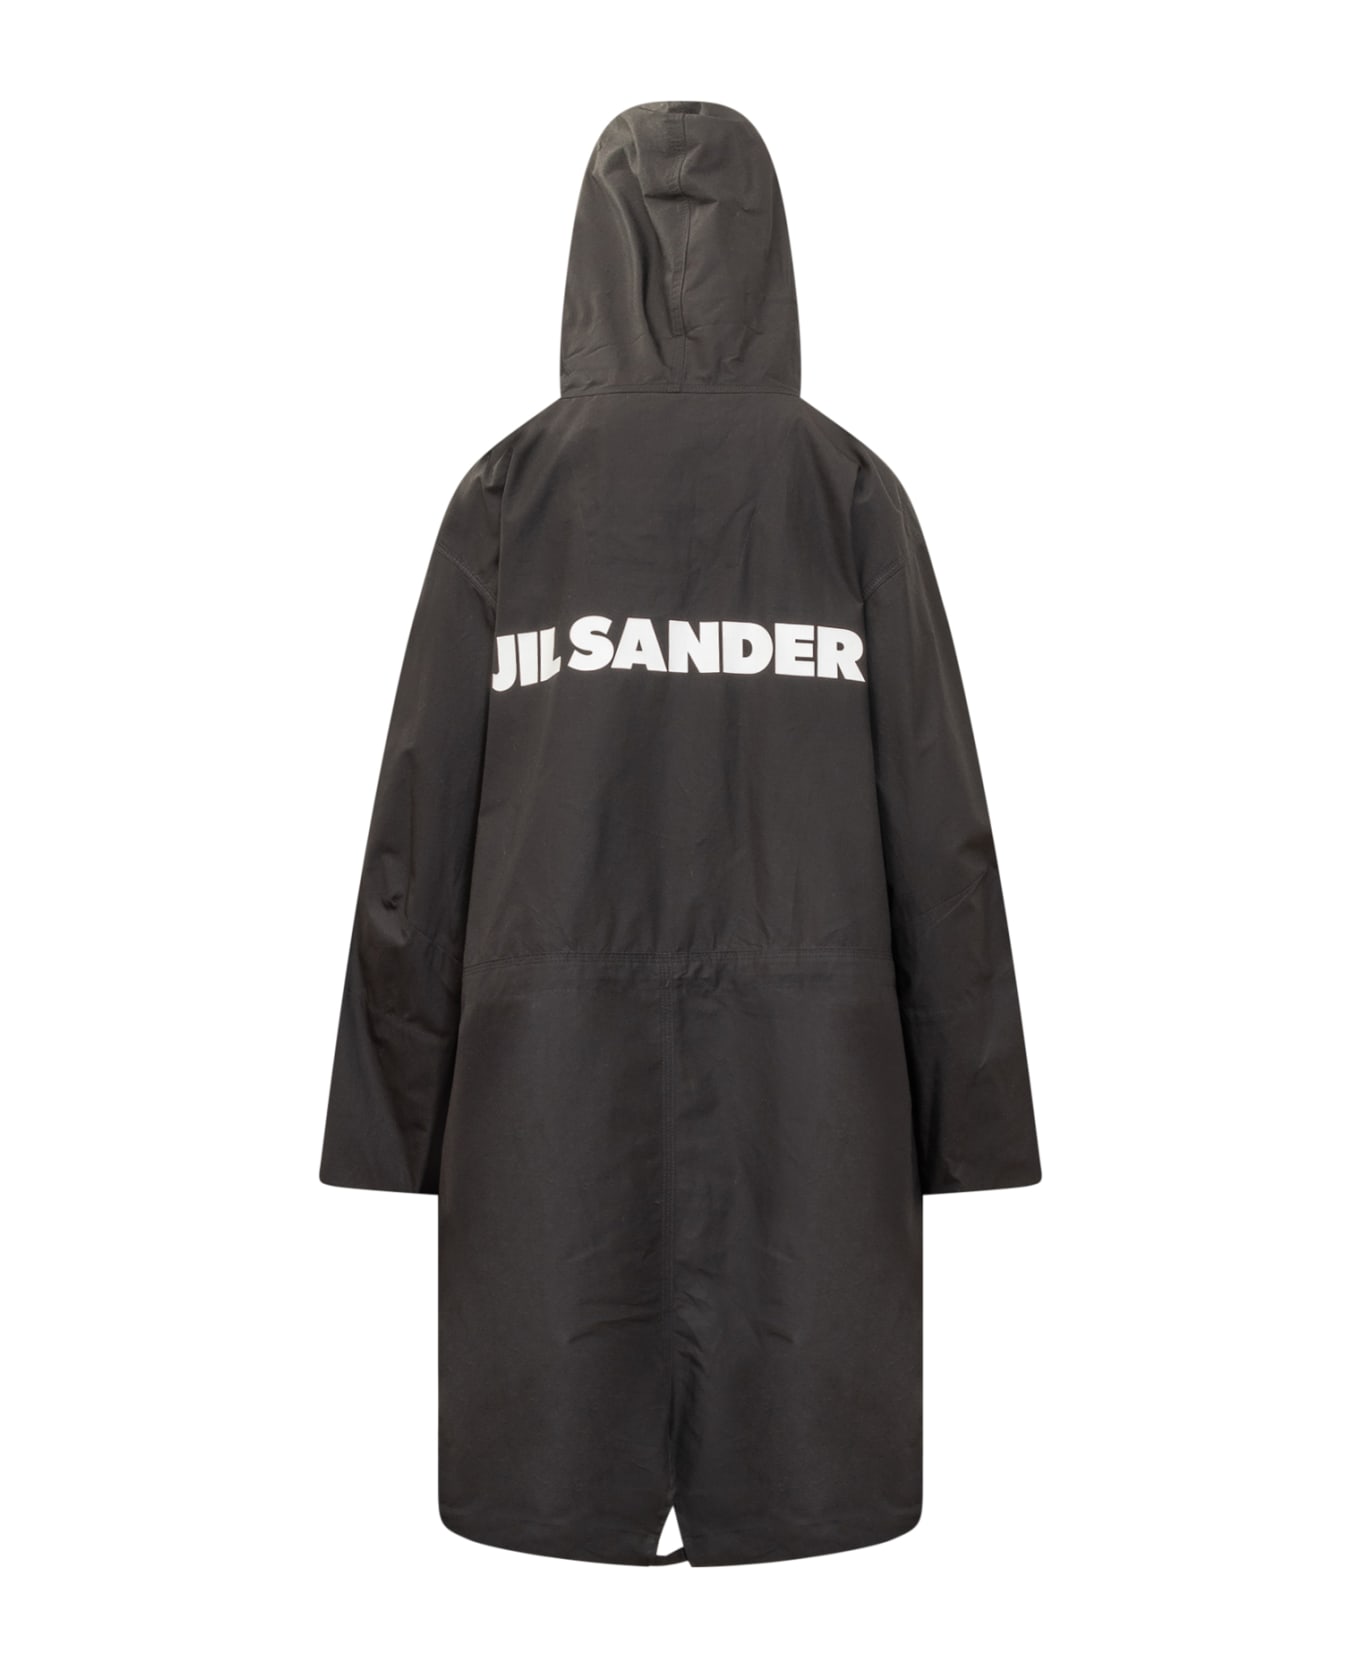 Jil Sander 01 Parka Trench - BLACK コート